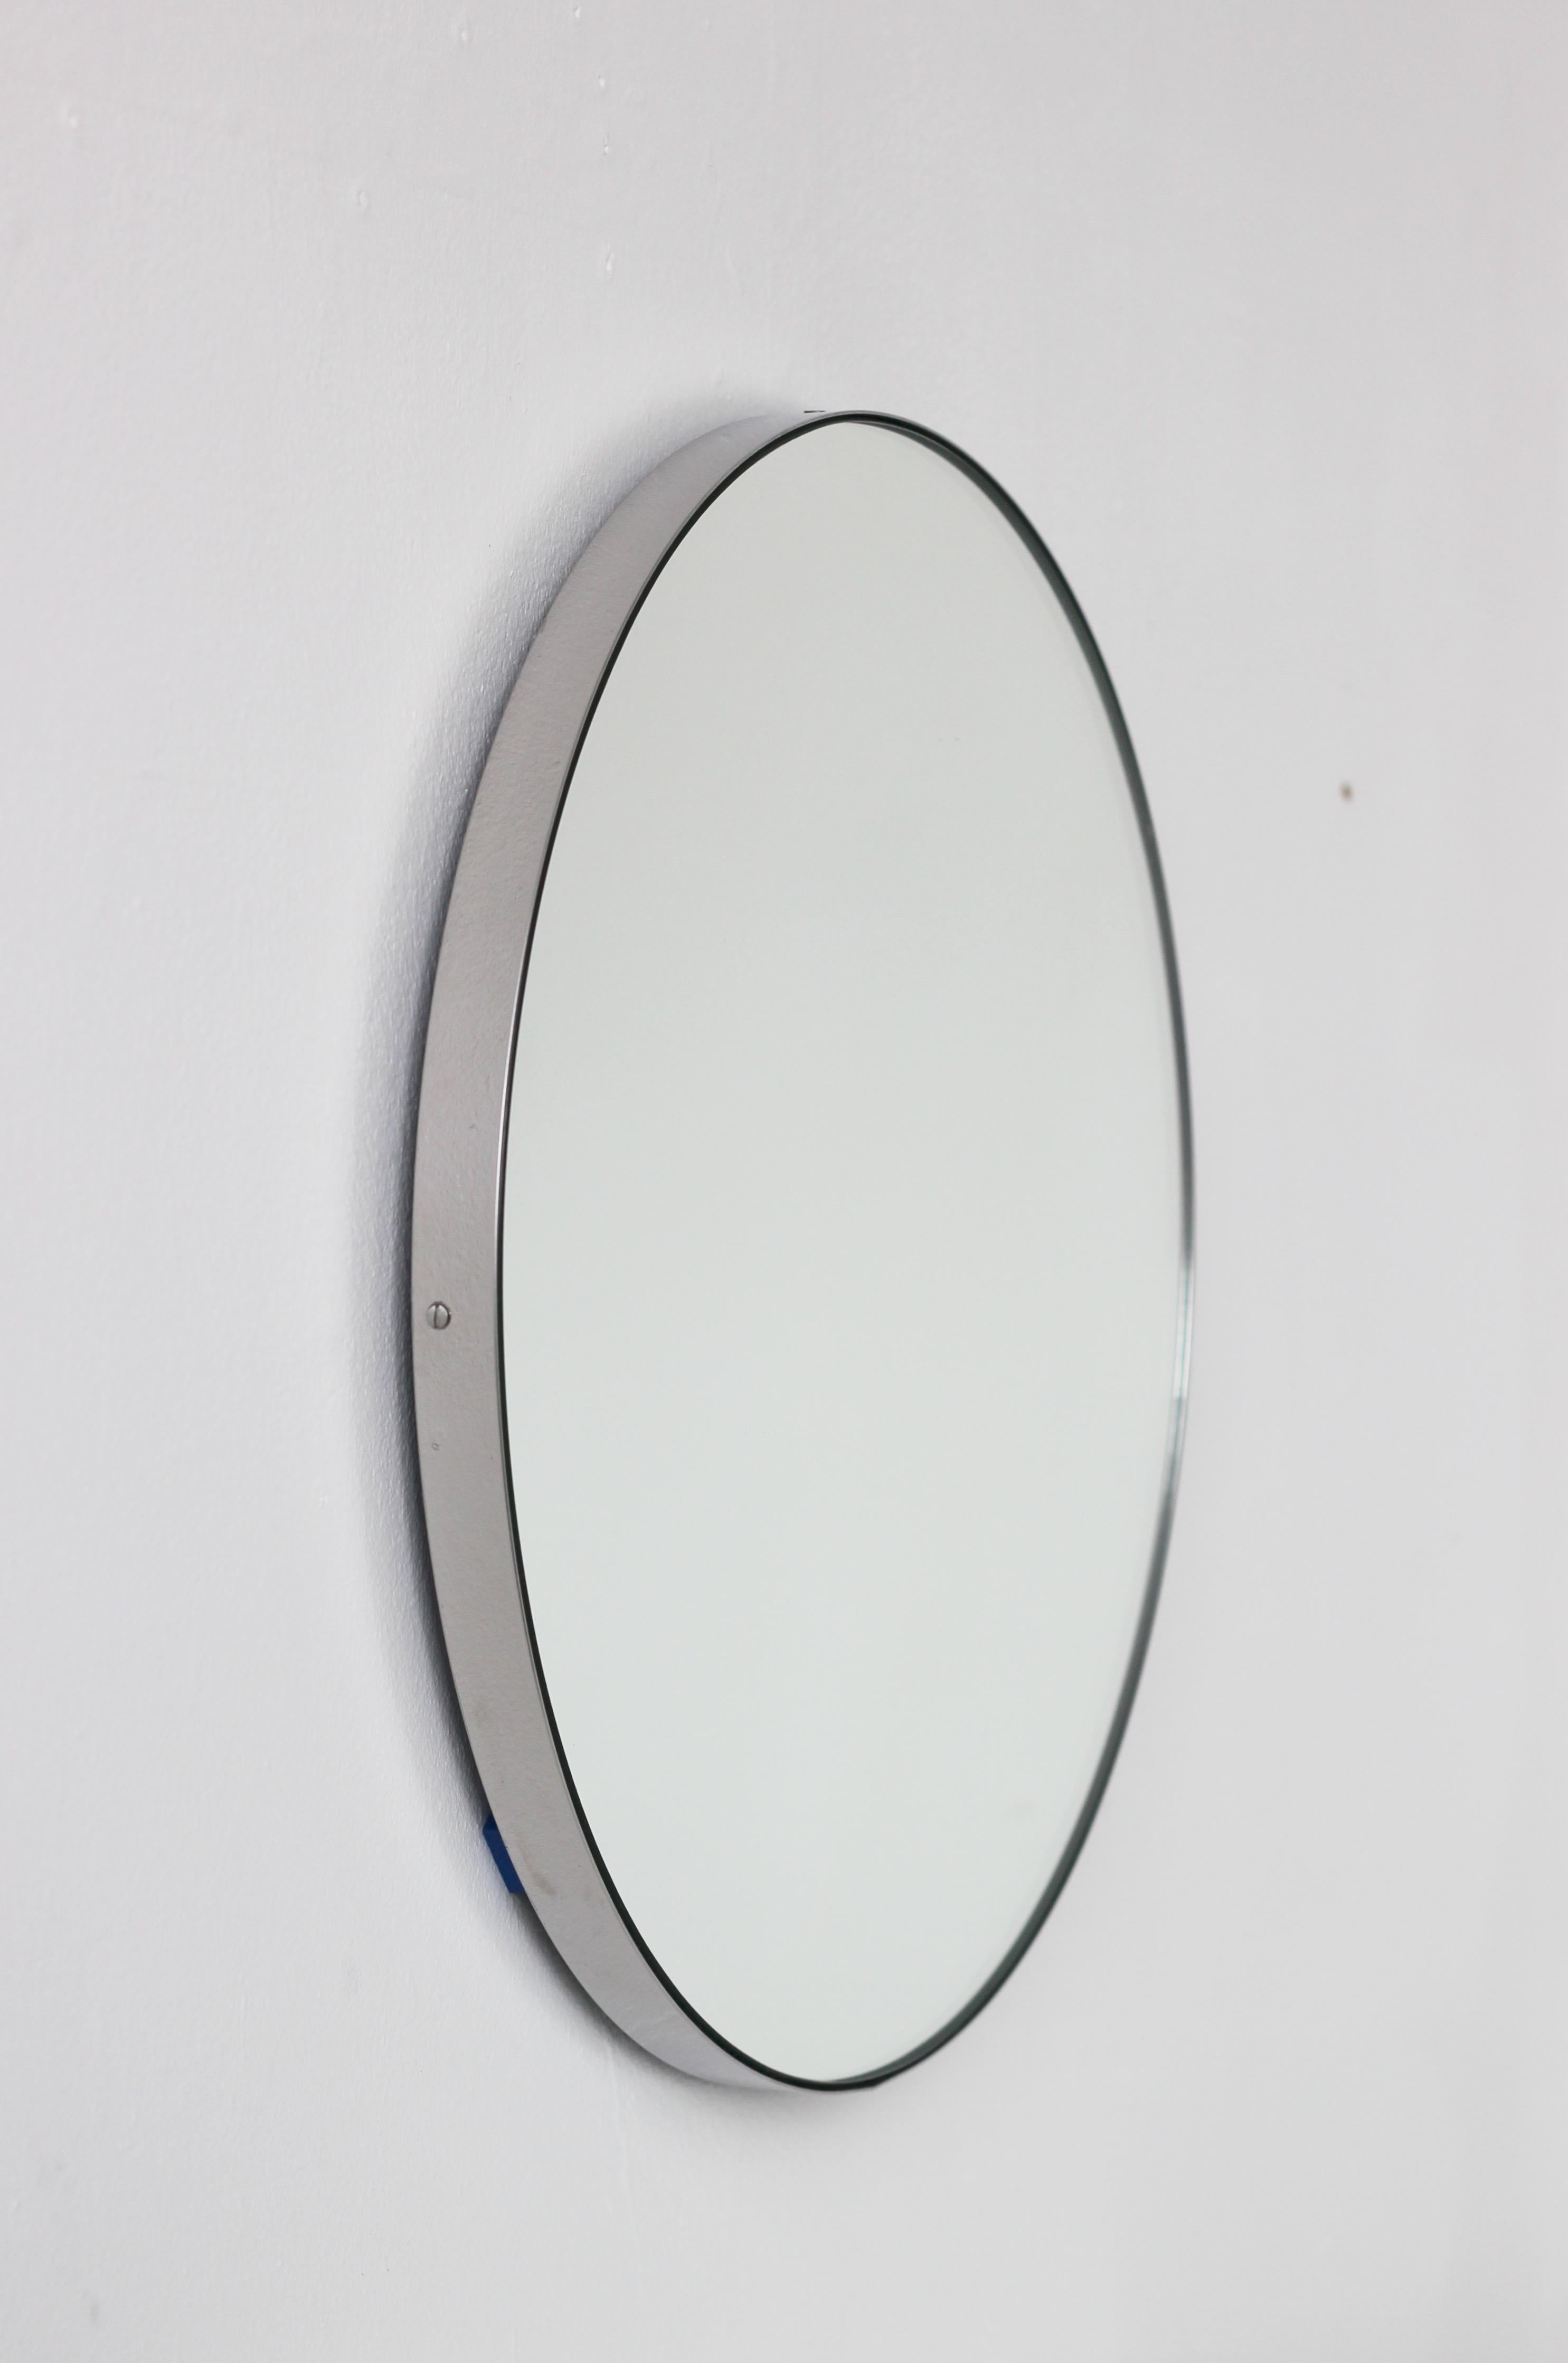 Miroir rond minimaliste avec un élégant cadre en acier inoxydable brossé (également disponible en finition polie). Les détails et la finition, y compris les vis apparentes, soulignent l'aspect artisanal et la qualité du miroir, véritable signature